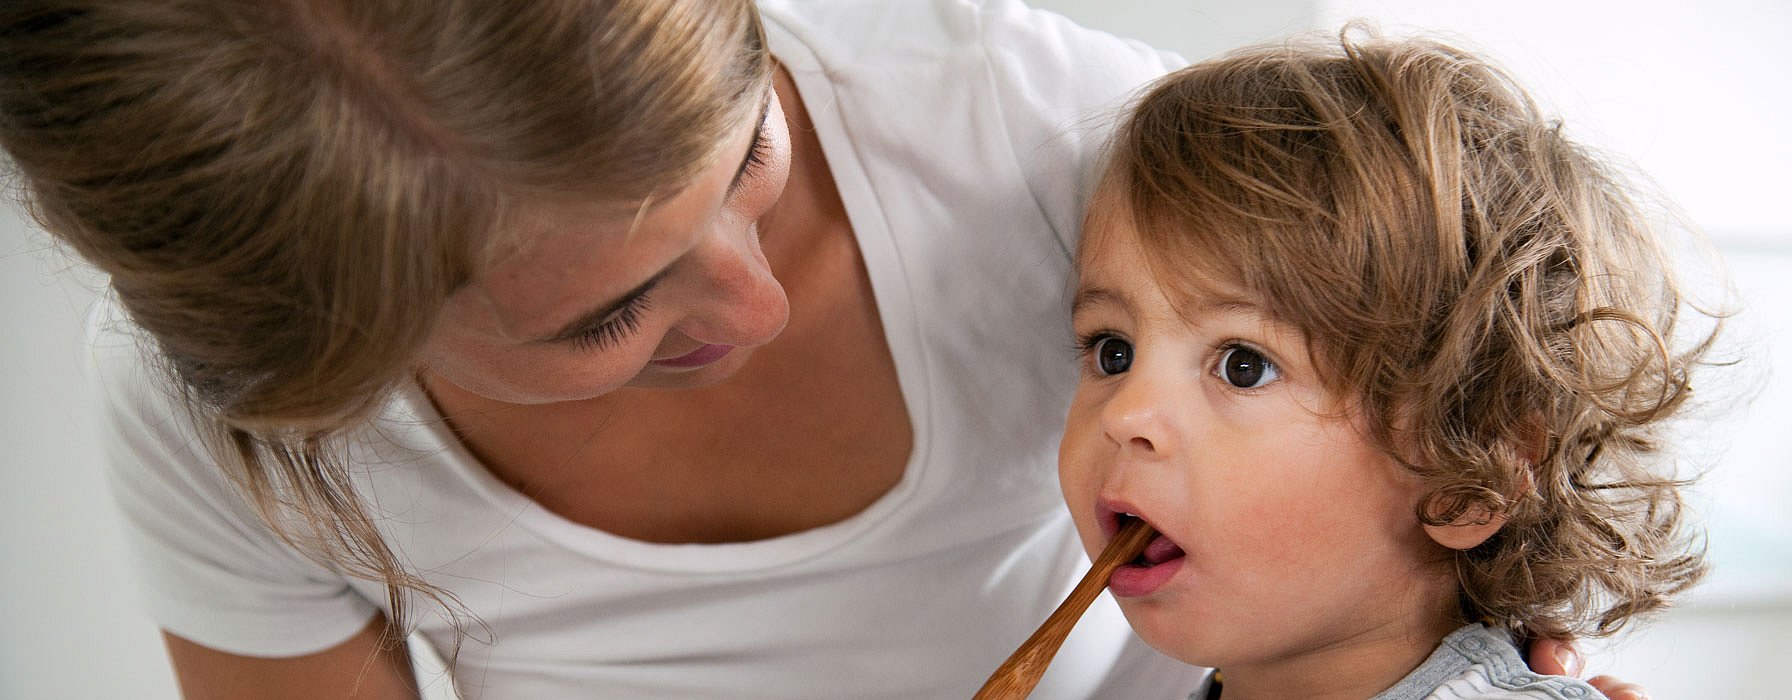 Mutter mit Kind am Zähne putzen